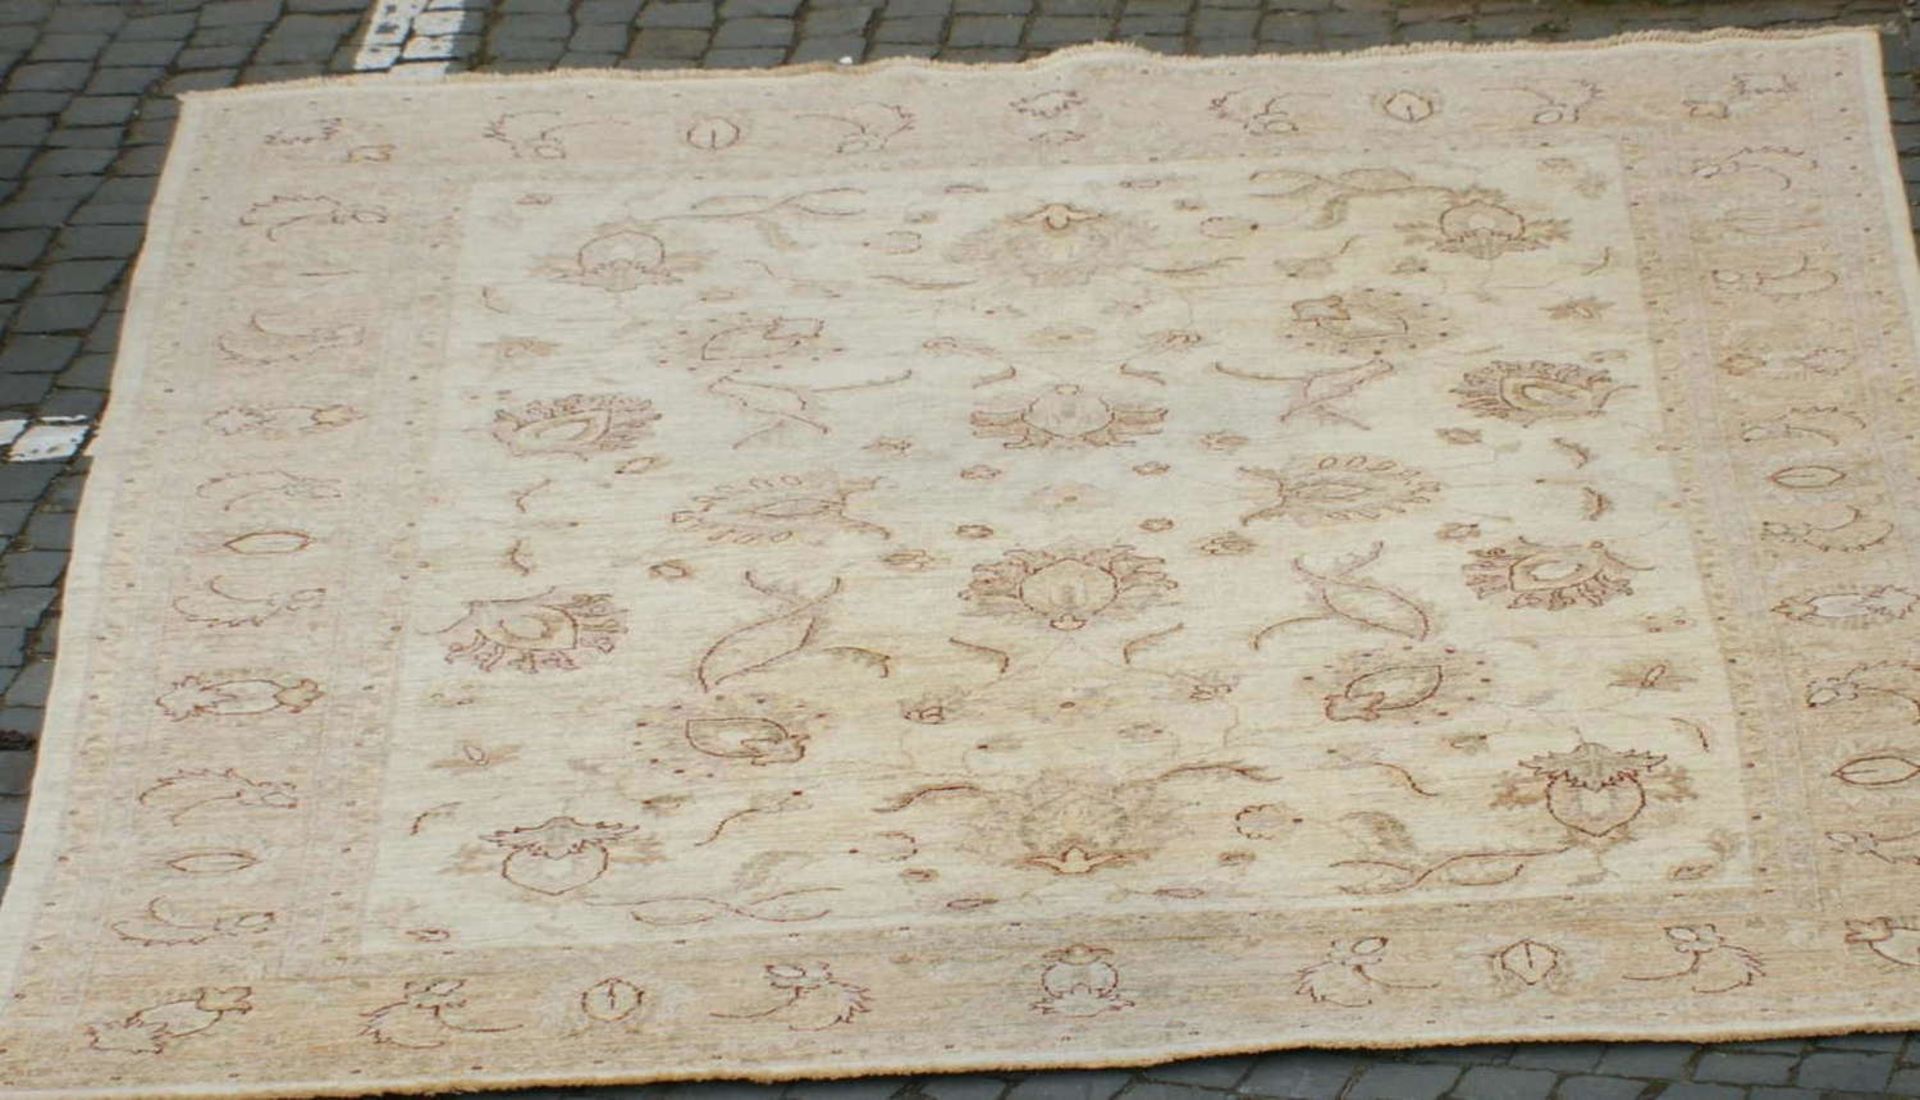 Großer Teppich in beige Tönen gehalten. Blumenmuster. Länge ca. 2,80m, Breite ca. 2,08m. mit